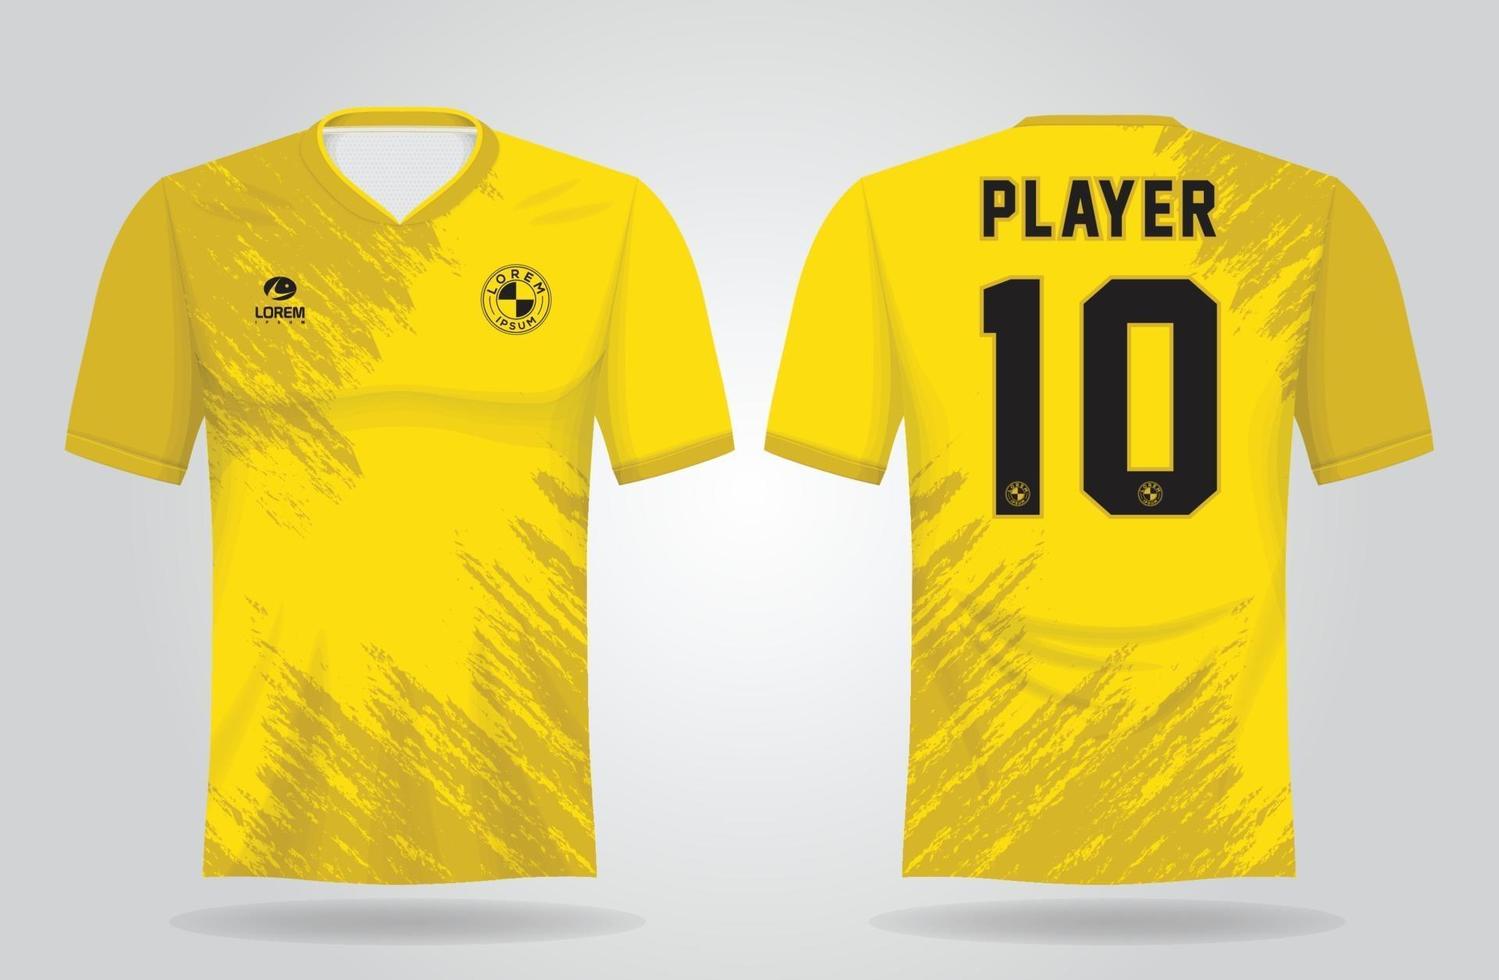 Plantilla de camiseta deportiva amarilla para uniformes de equipo y diseño de camiseta de fútbol. vector